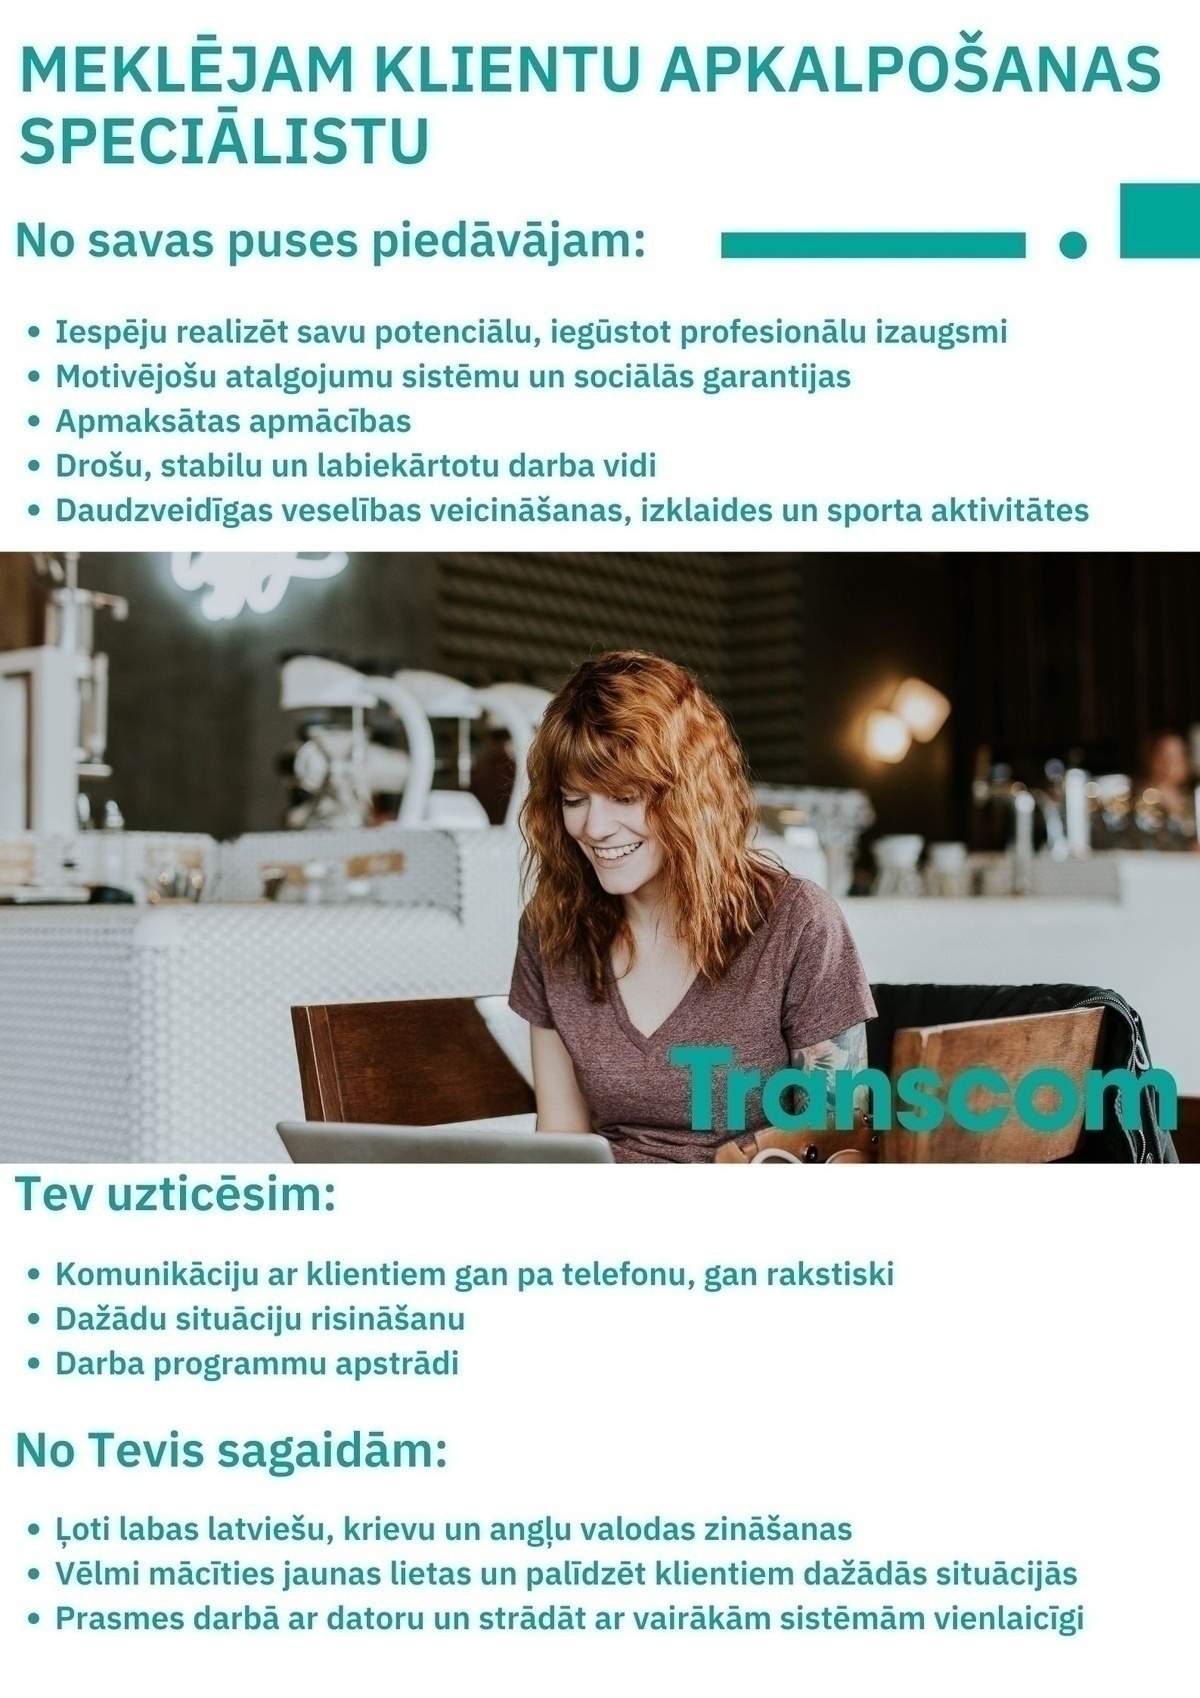 Transcom Worldwide Latvia, SIA Klientu apkalpošanas speciālists/-e Rīgā